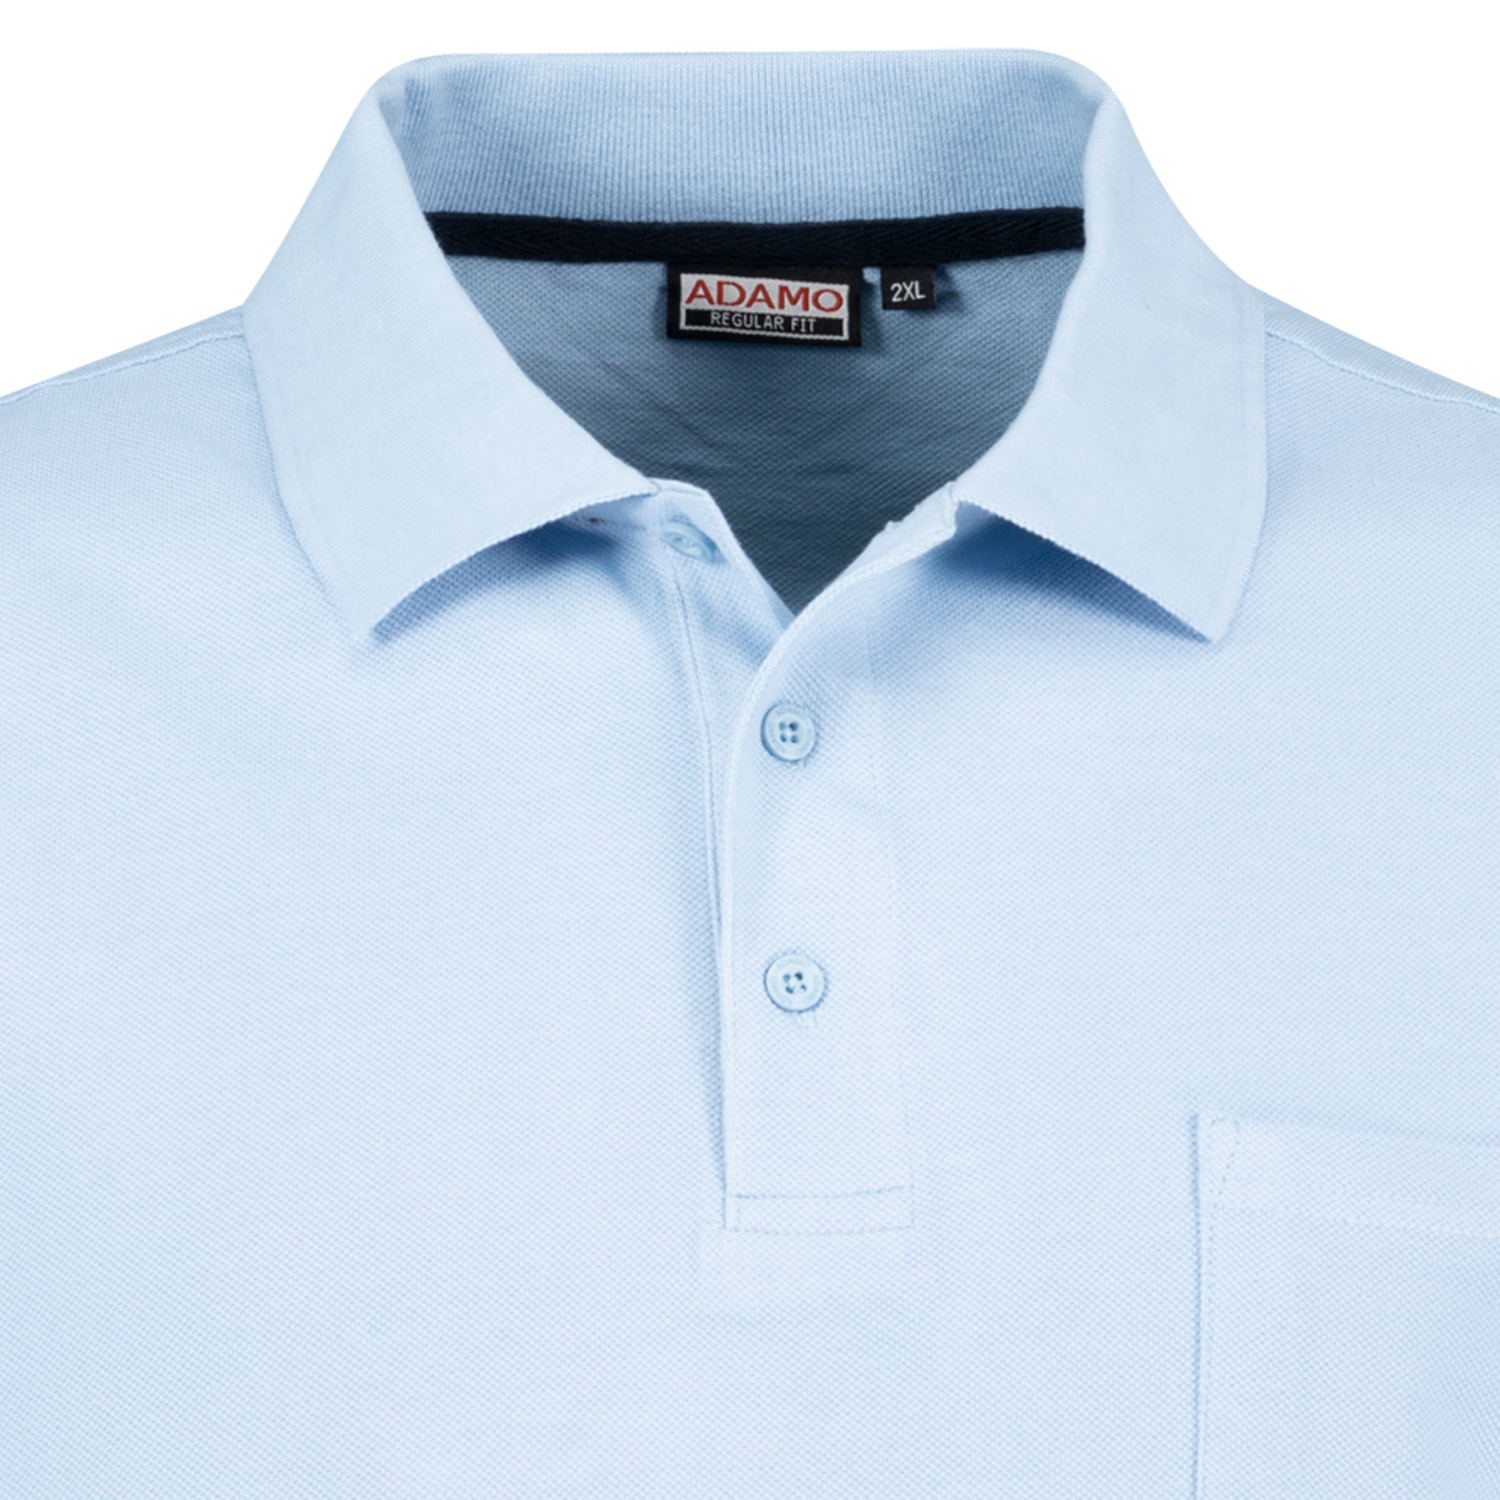 Hellblaues Kurzarm Polo Shirt KENO von ADAMO in Pique Qualität für Herren in großen Größen bis 10XL